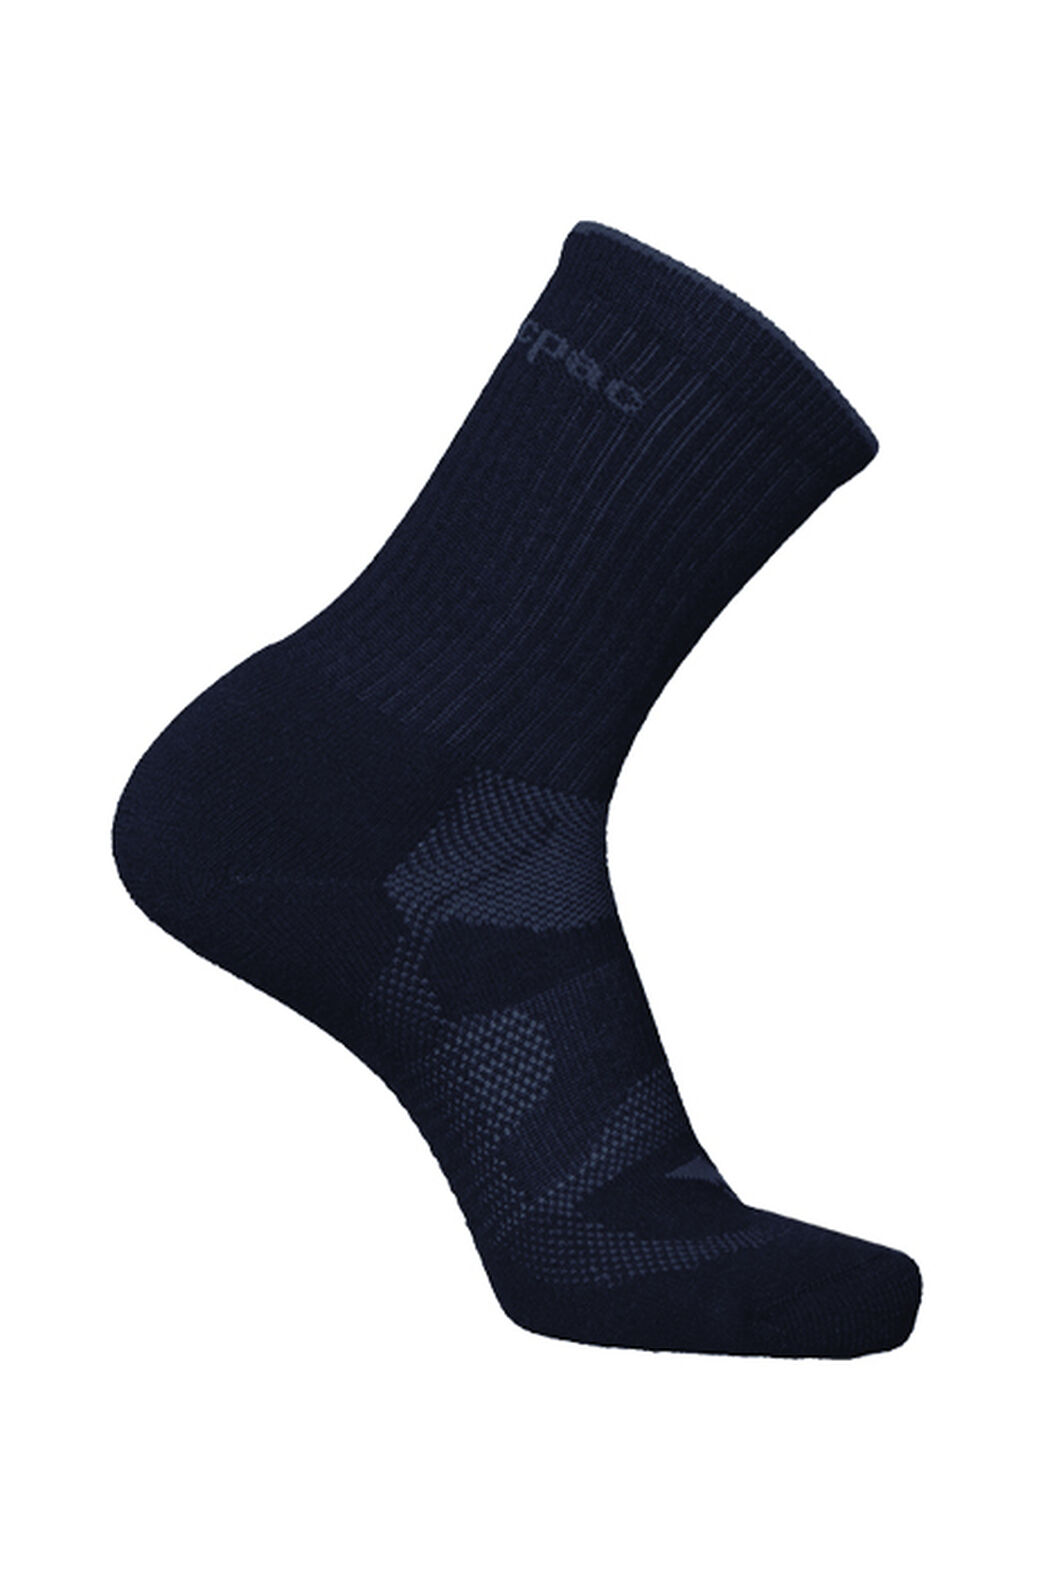 Macpac Merino Hiker Socks